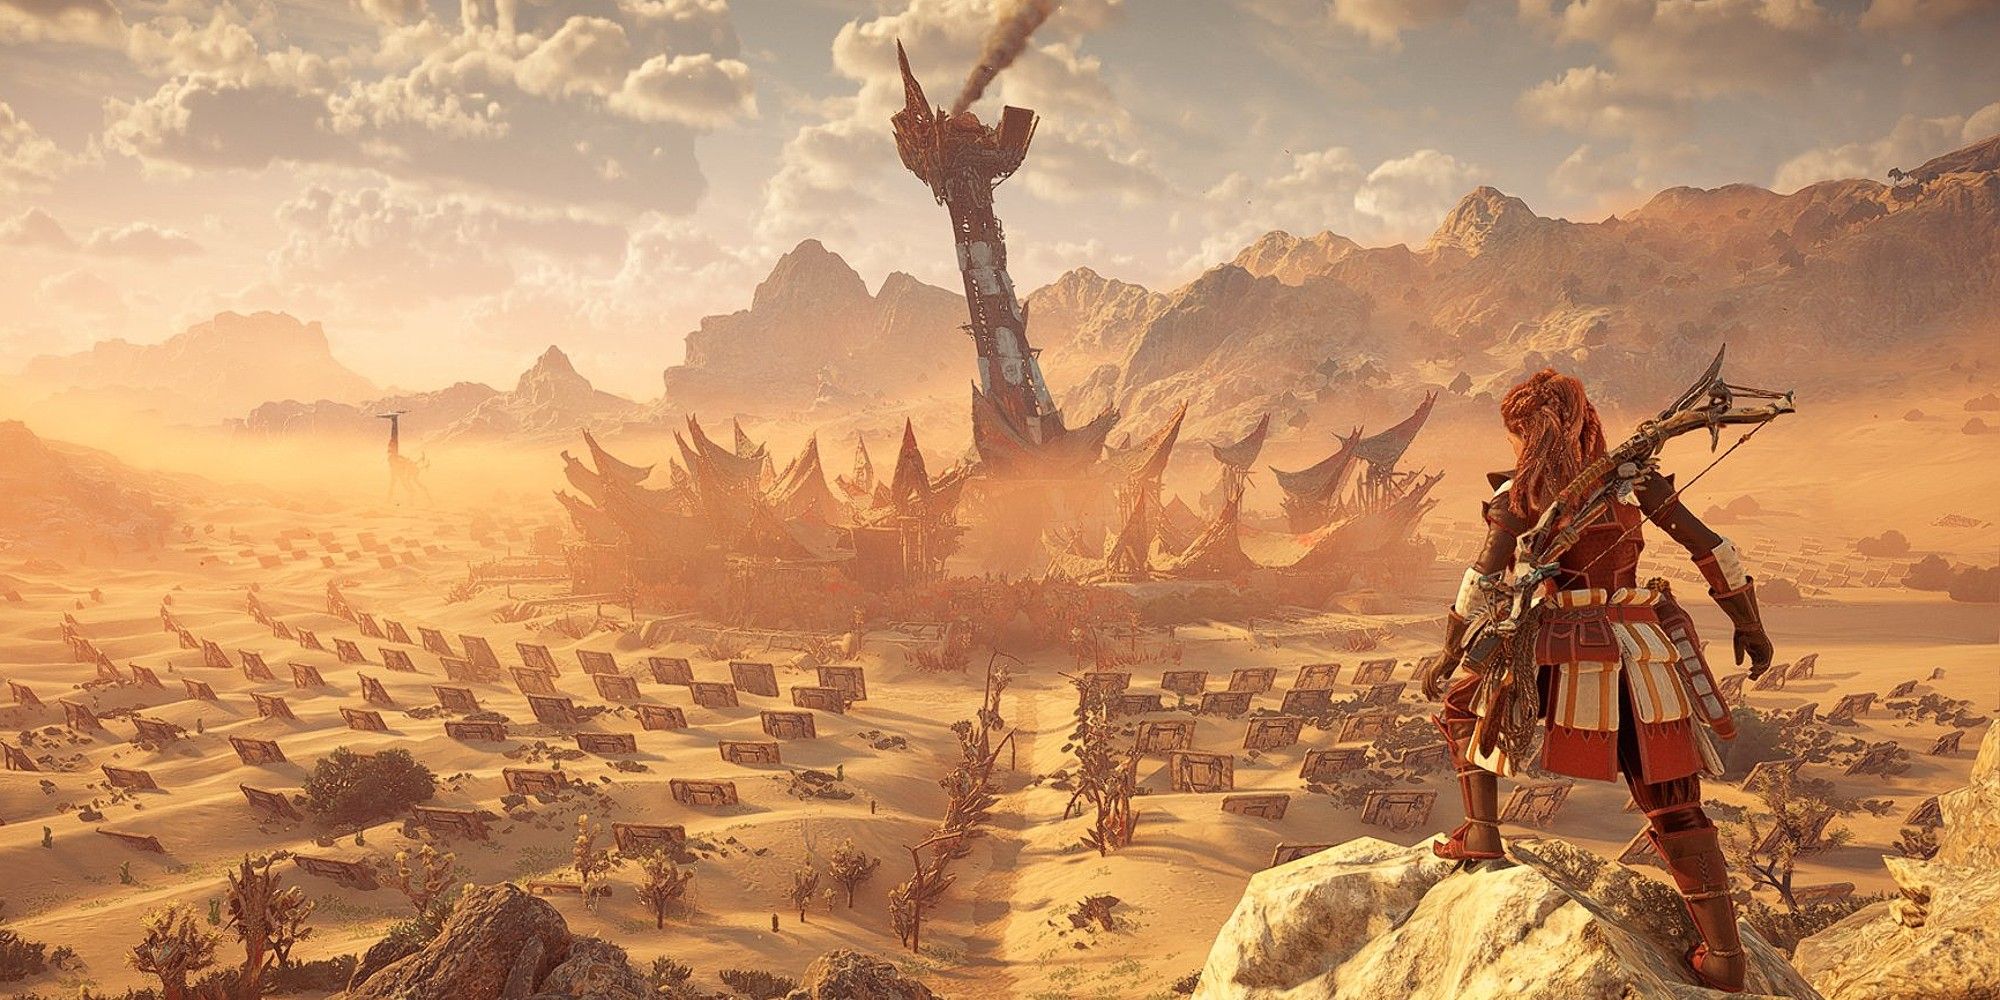 Horizon Forbidden West: Is It Good on PS4?